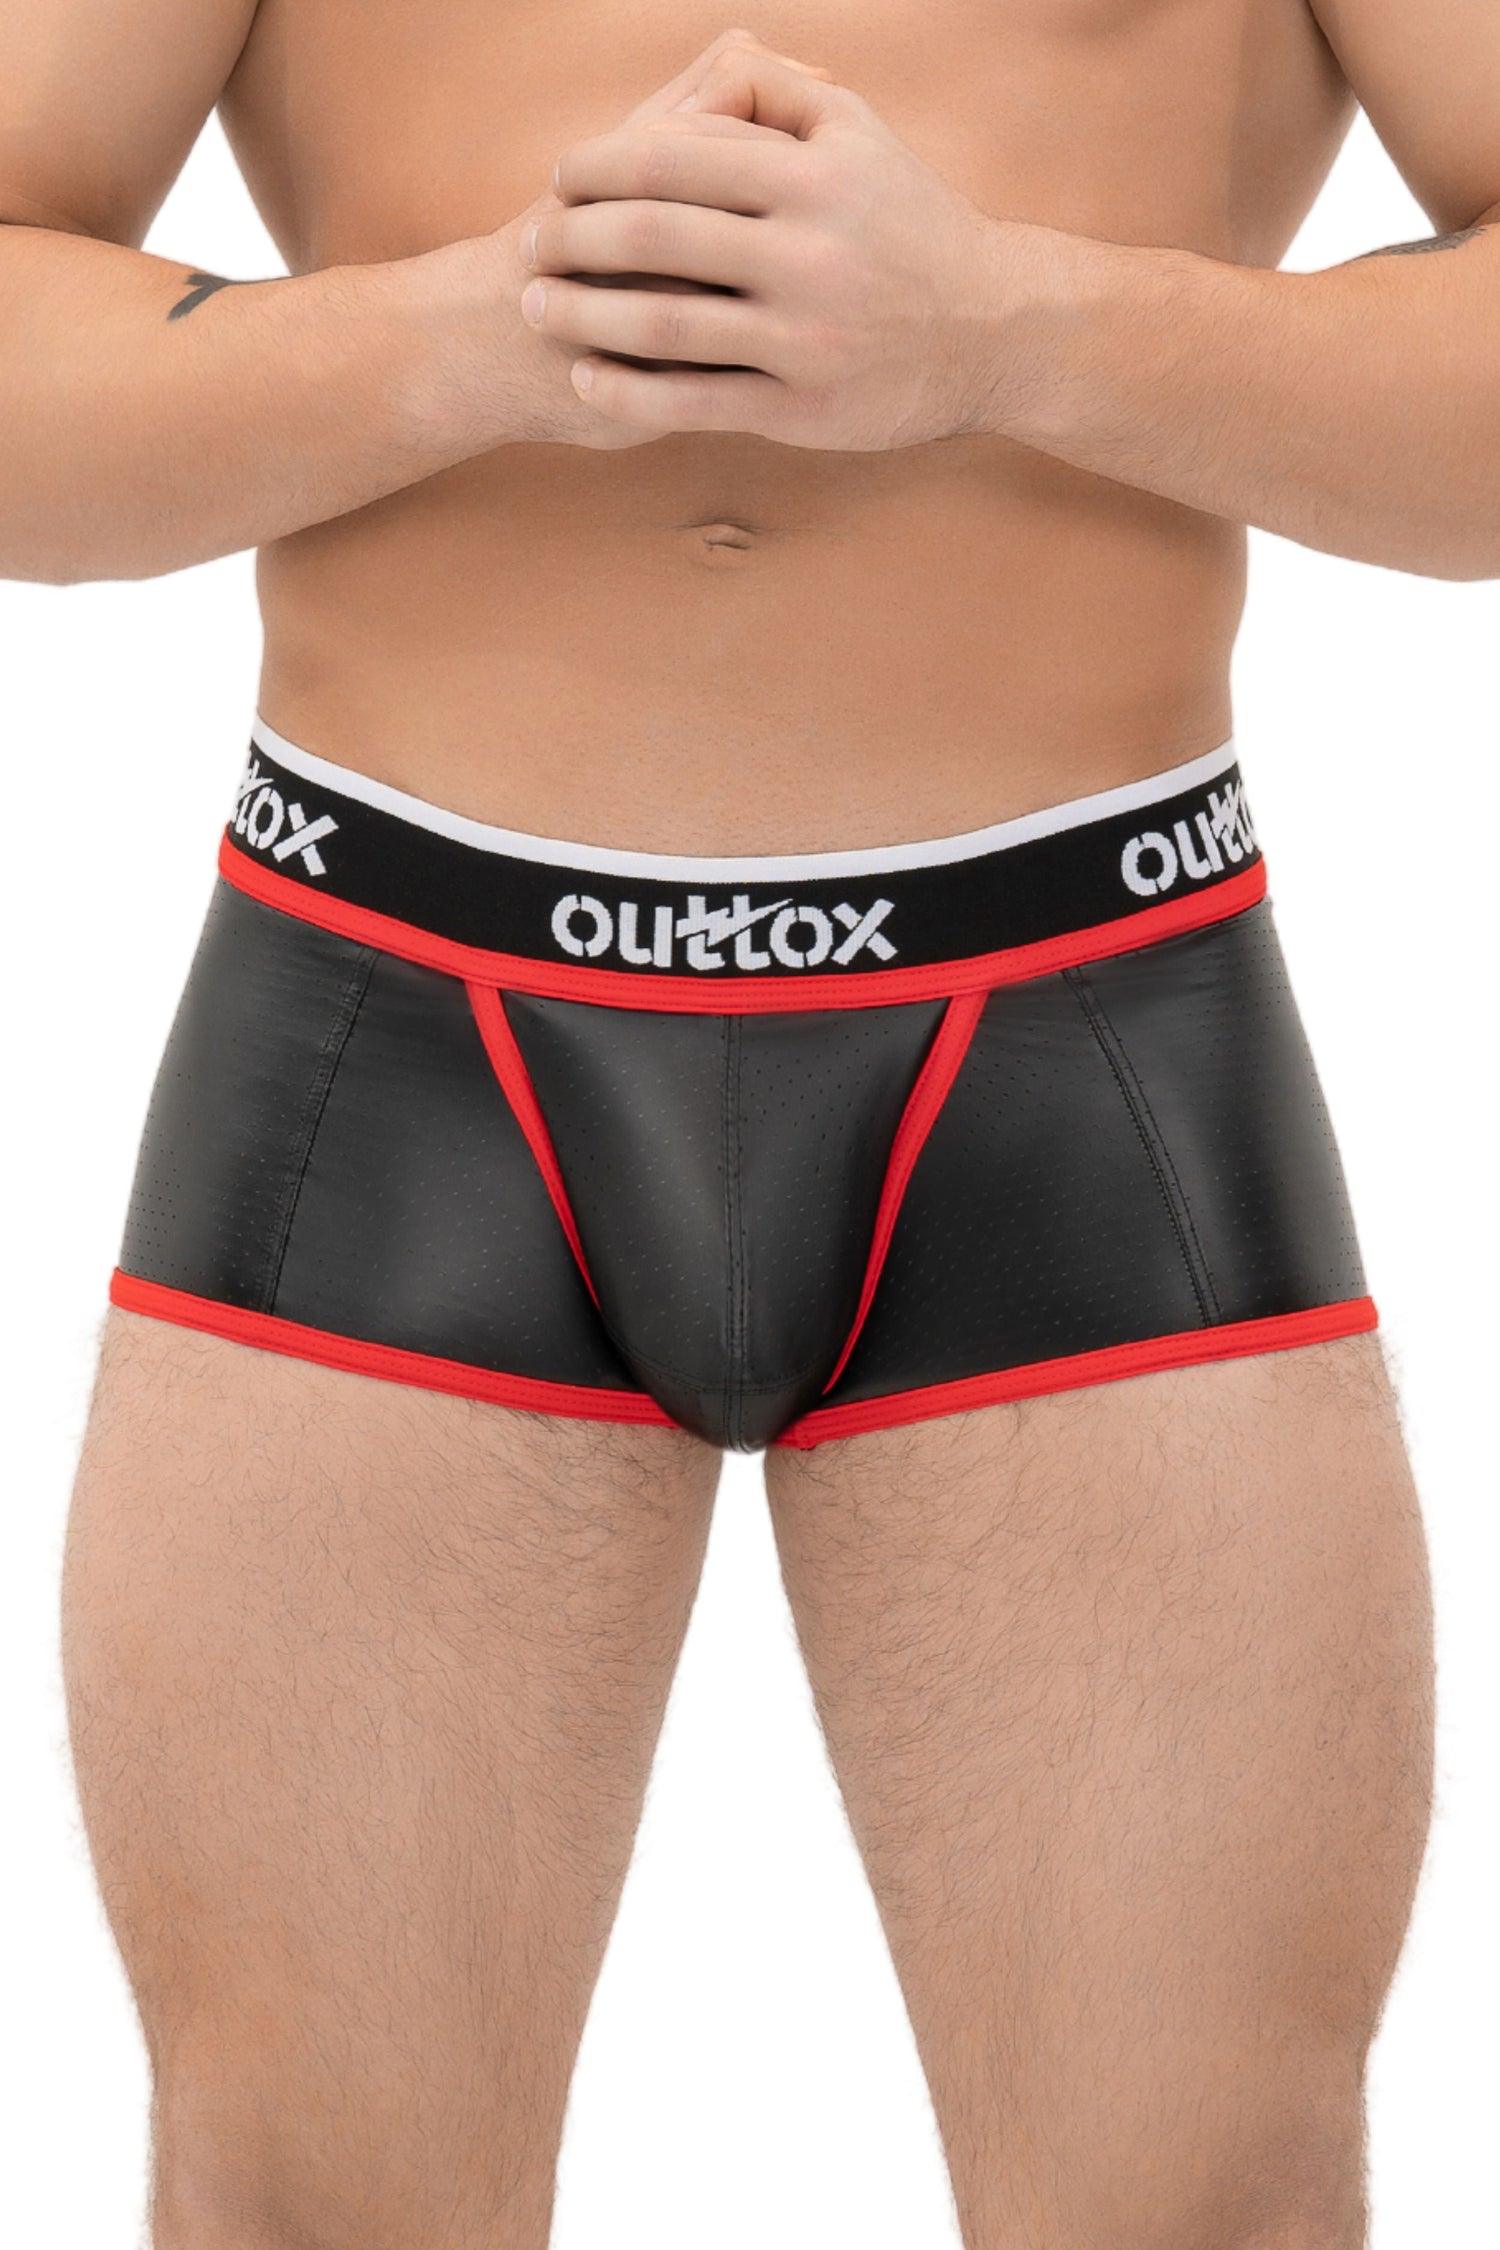 Outtox. Gewickelte Shorts mit Druckknopfverschluss. Schwarz+Rot